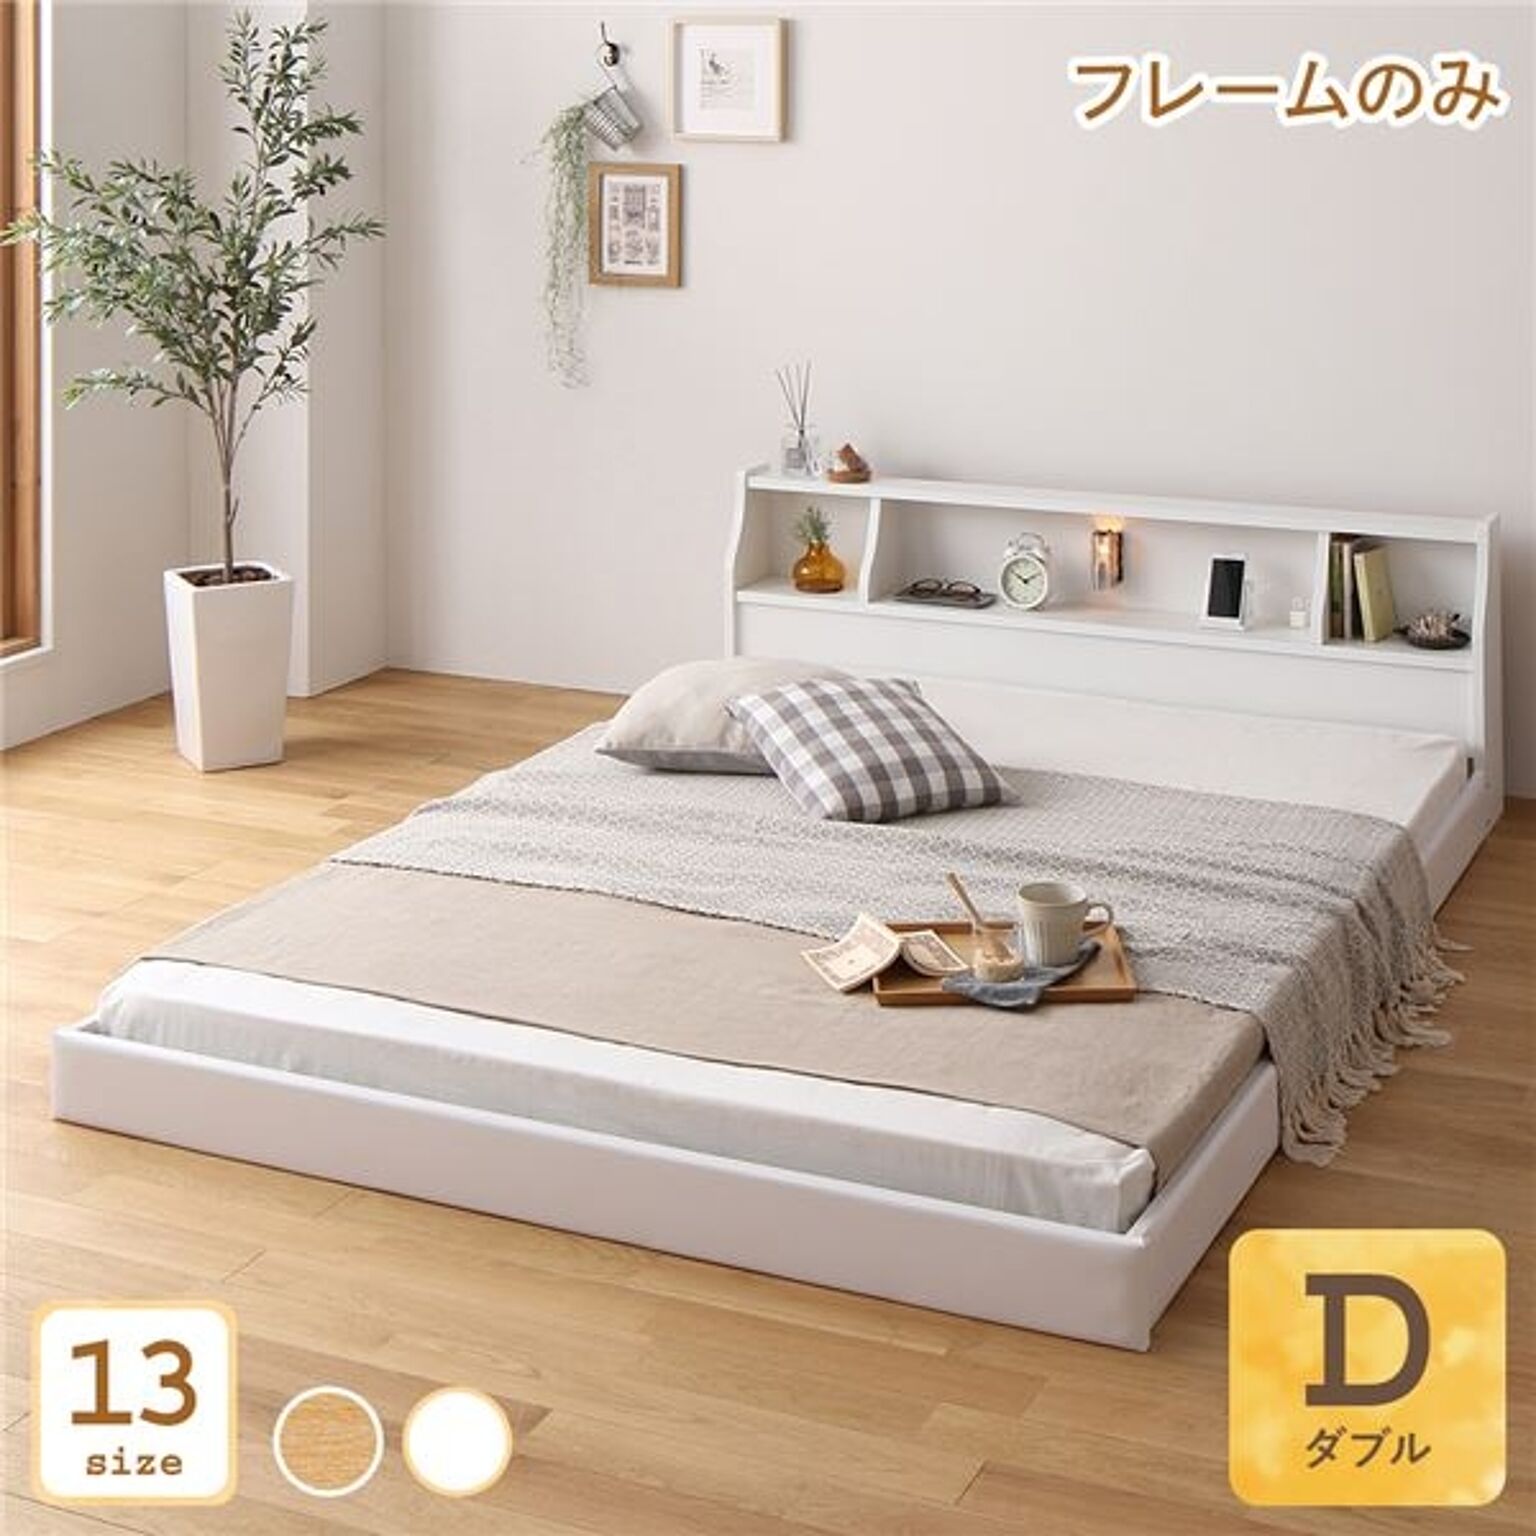 日本製 ダブルベッド ロータイプ 連結可能 低床設計 木製 ホワイト